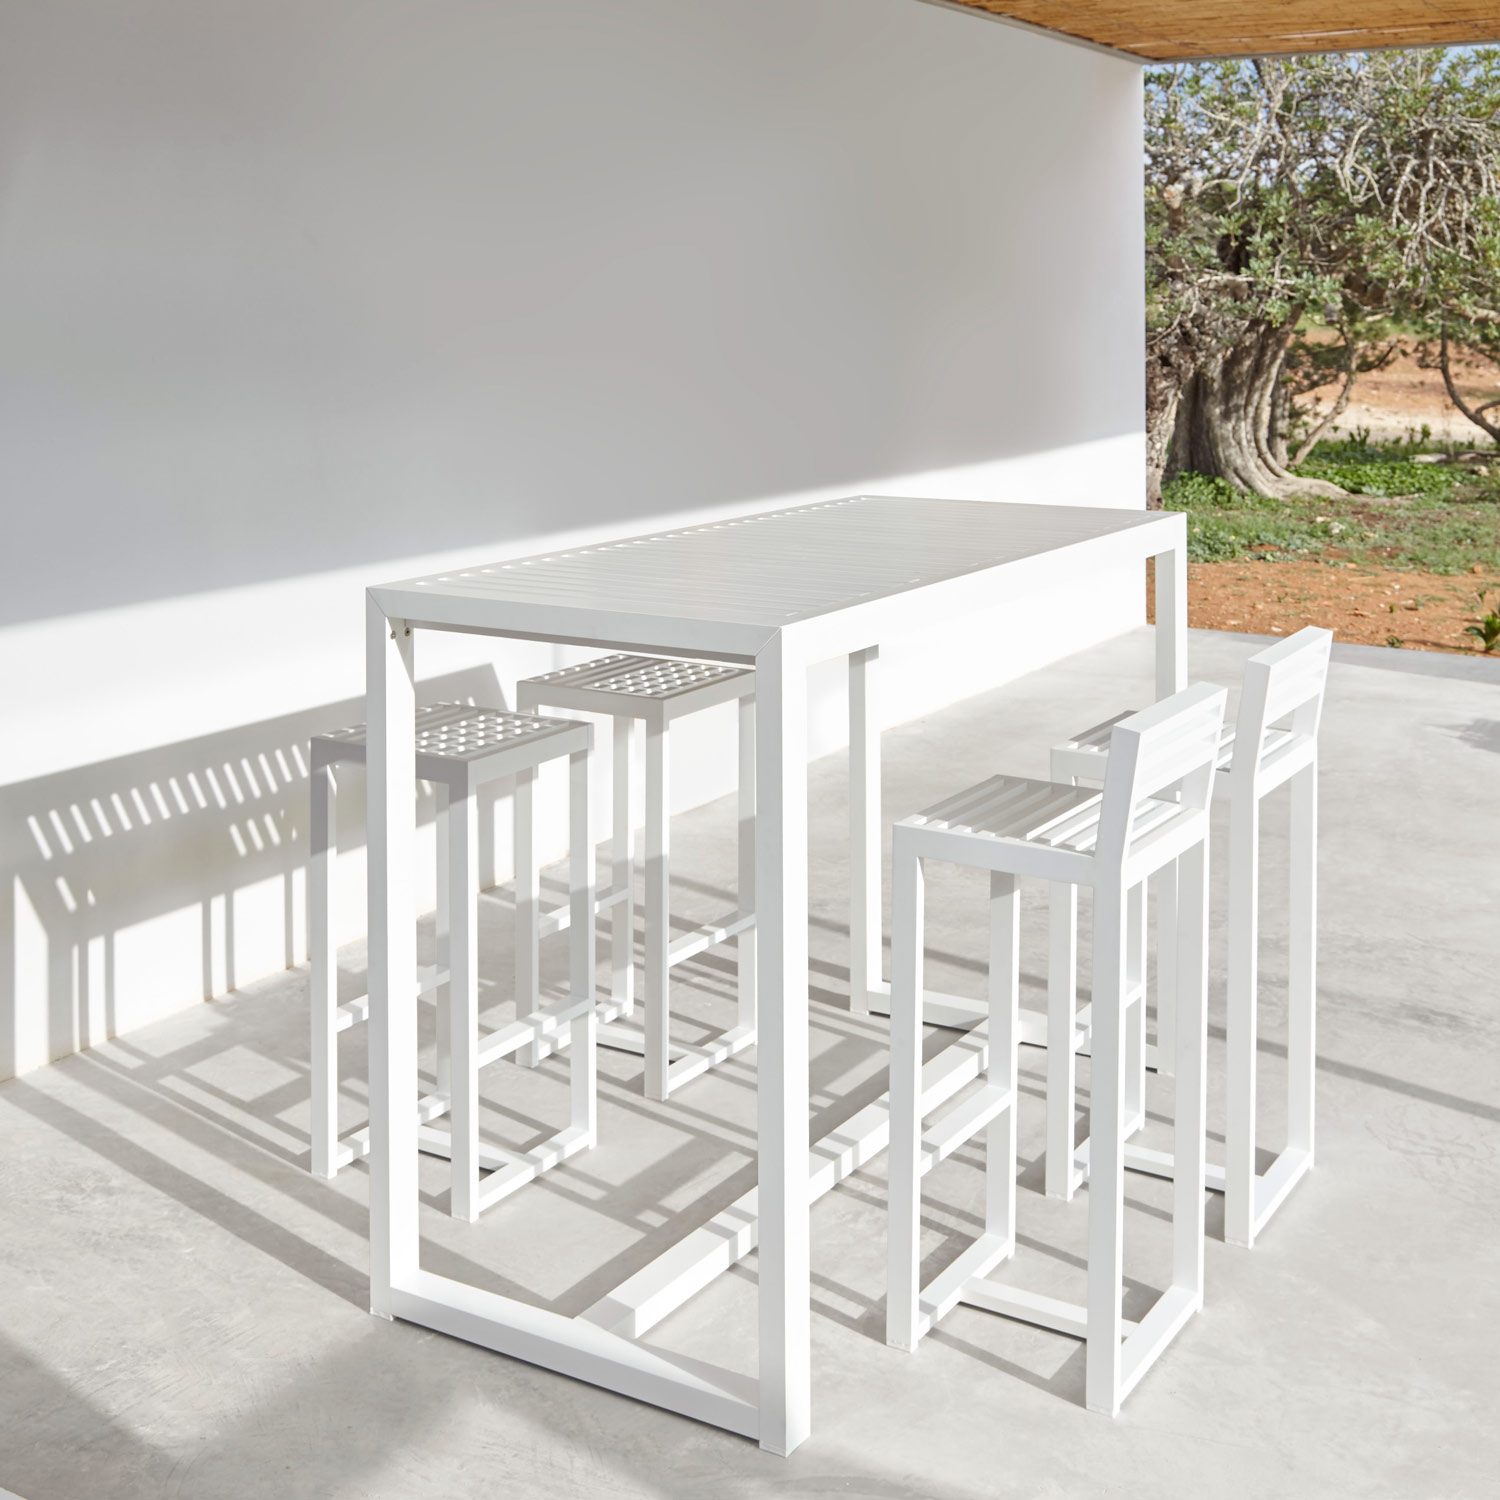 DNA luksuriøse møbler skab den dejlige spiseplads med barbord og barstol fra Gitz Design og Gandia Blasco